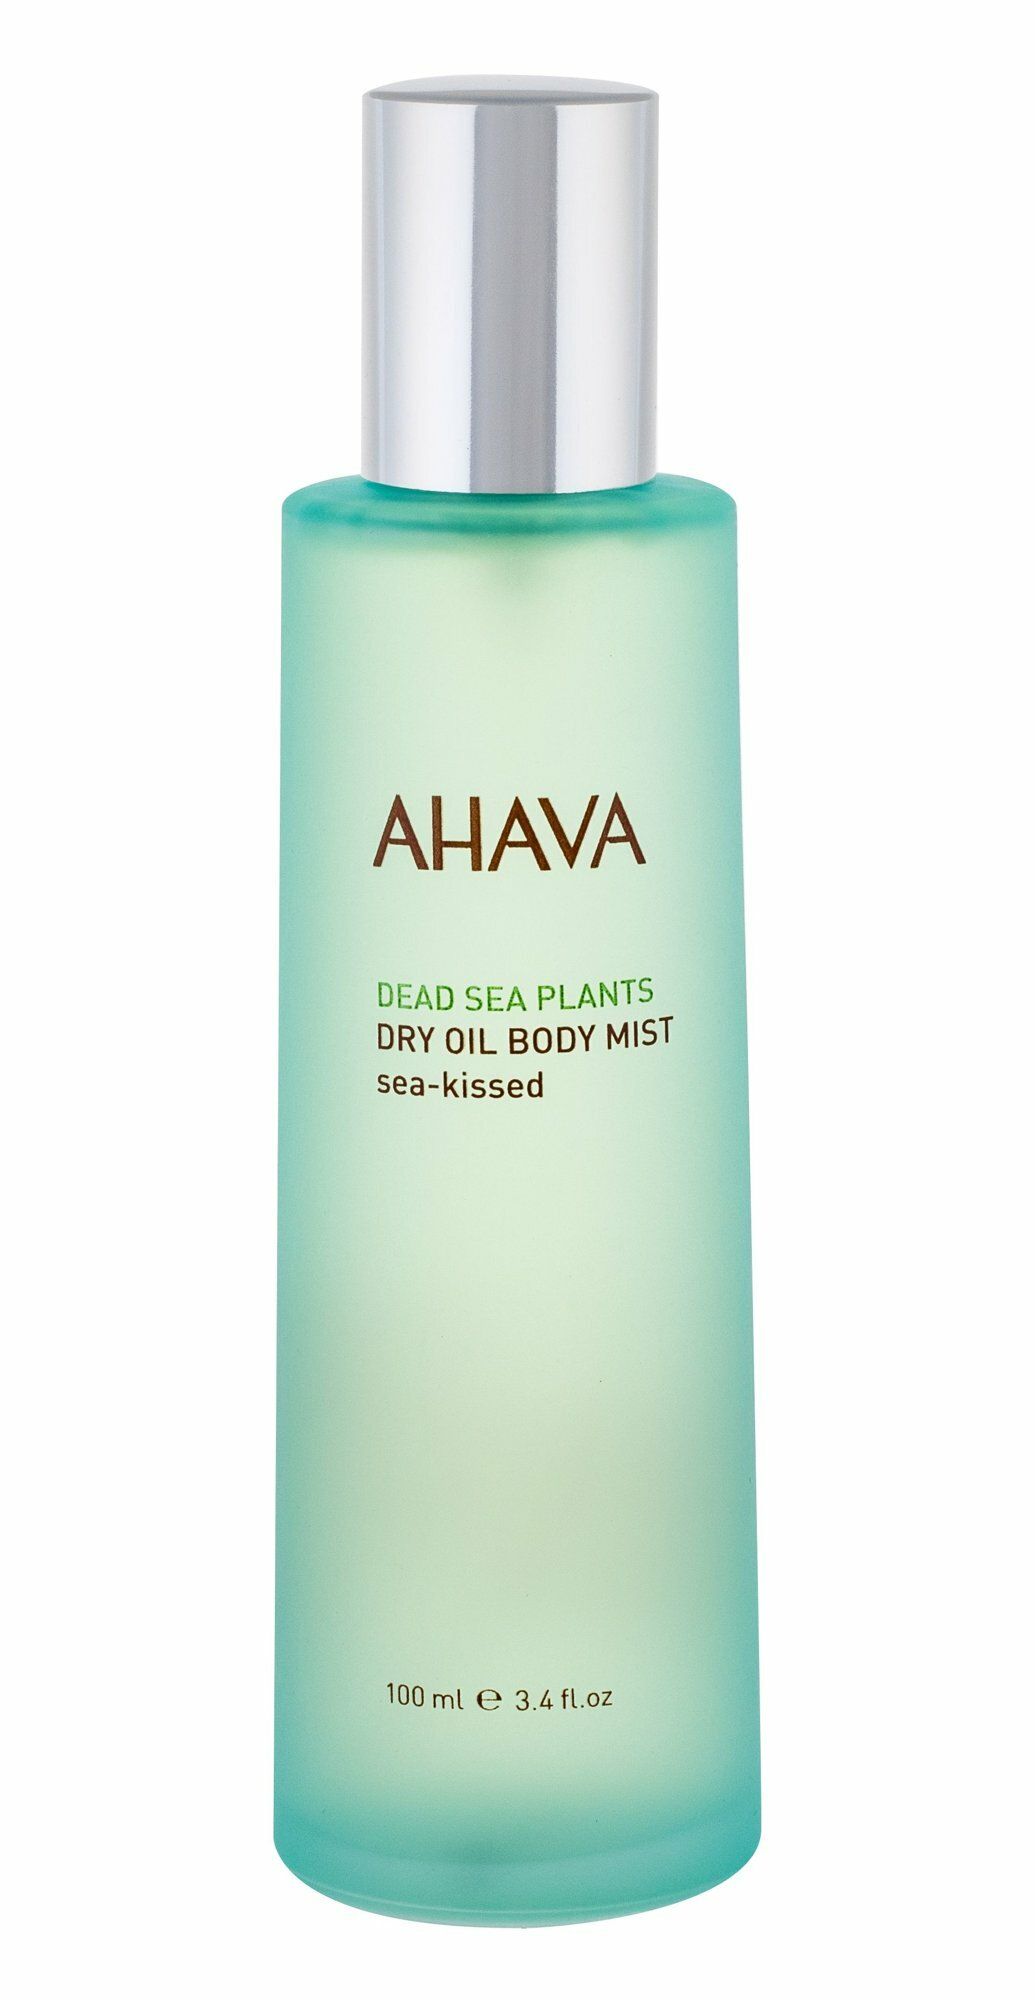 AHAVA DEADSEA PLANTS Dry Oil Body Mist Sea-Kissed